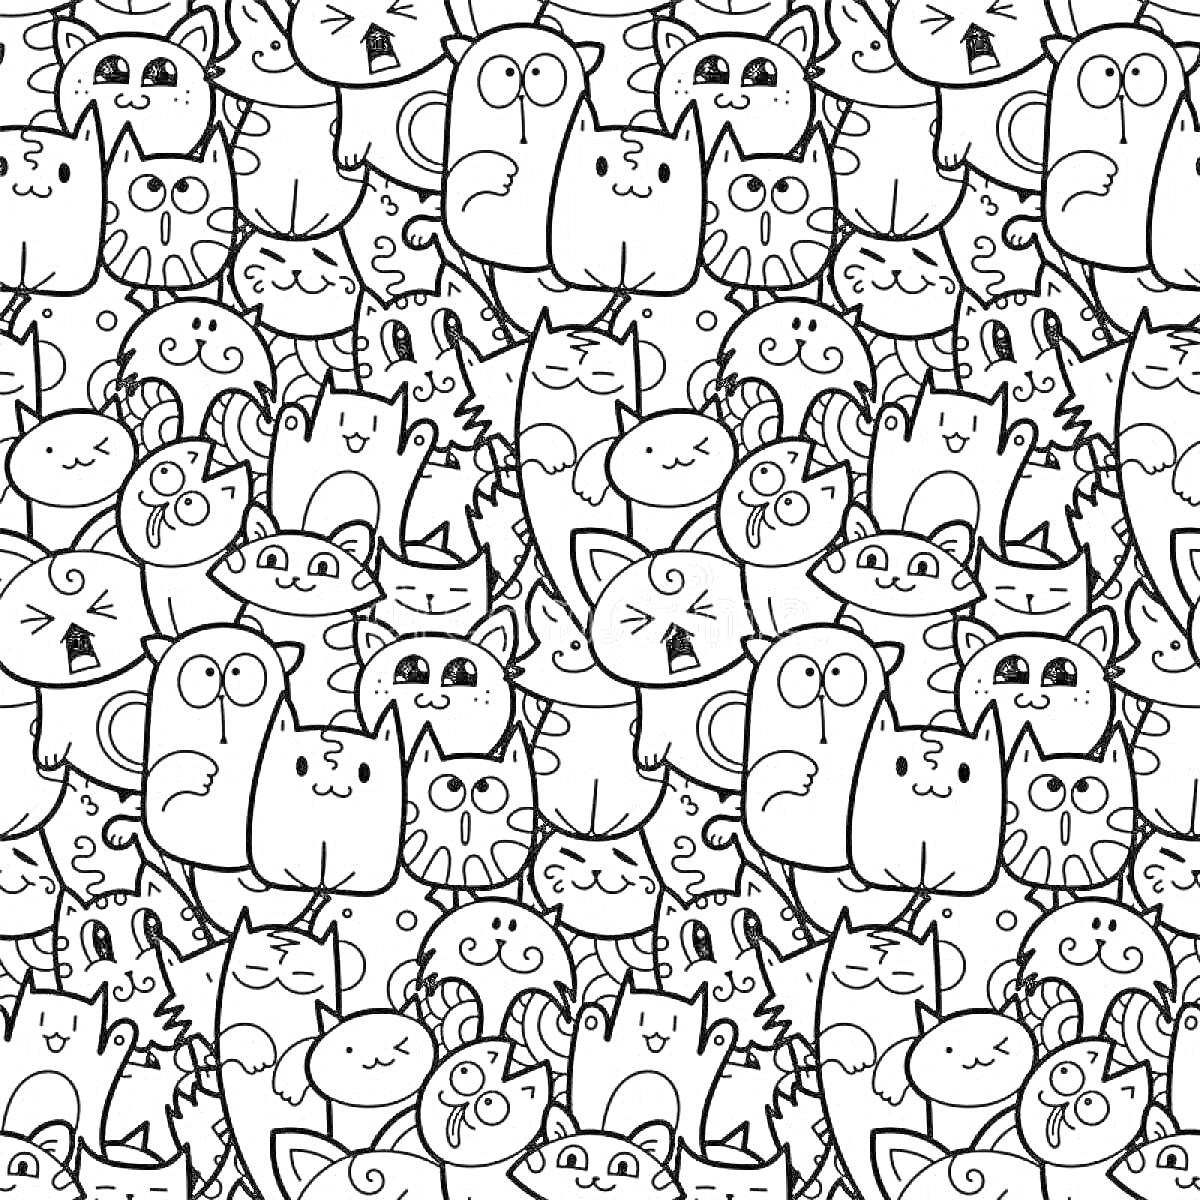 Раскраска множество котиков разной формы и с разными выражениями лиц